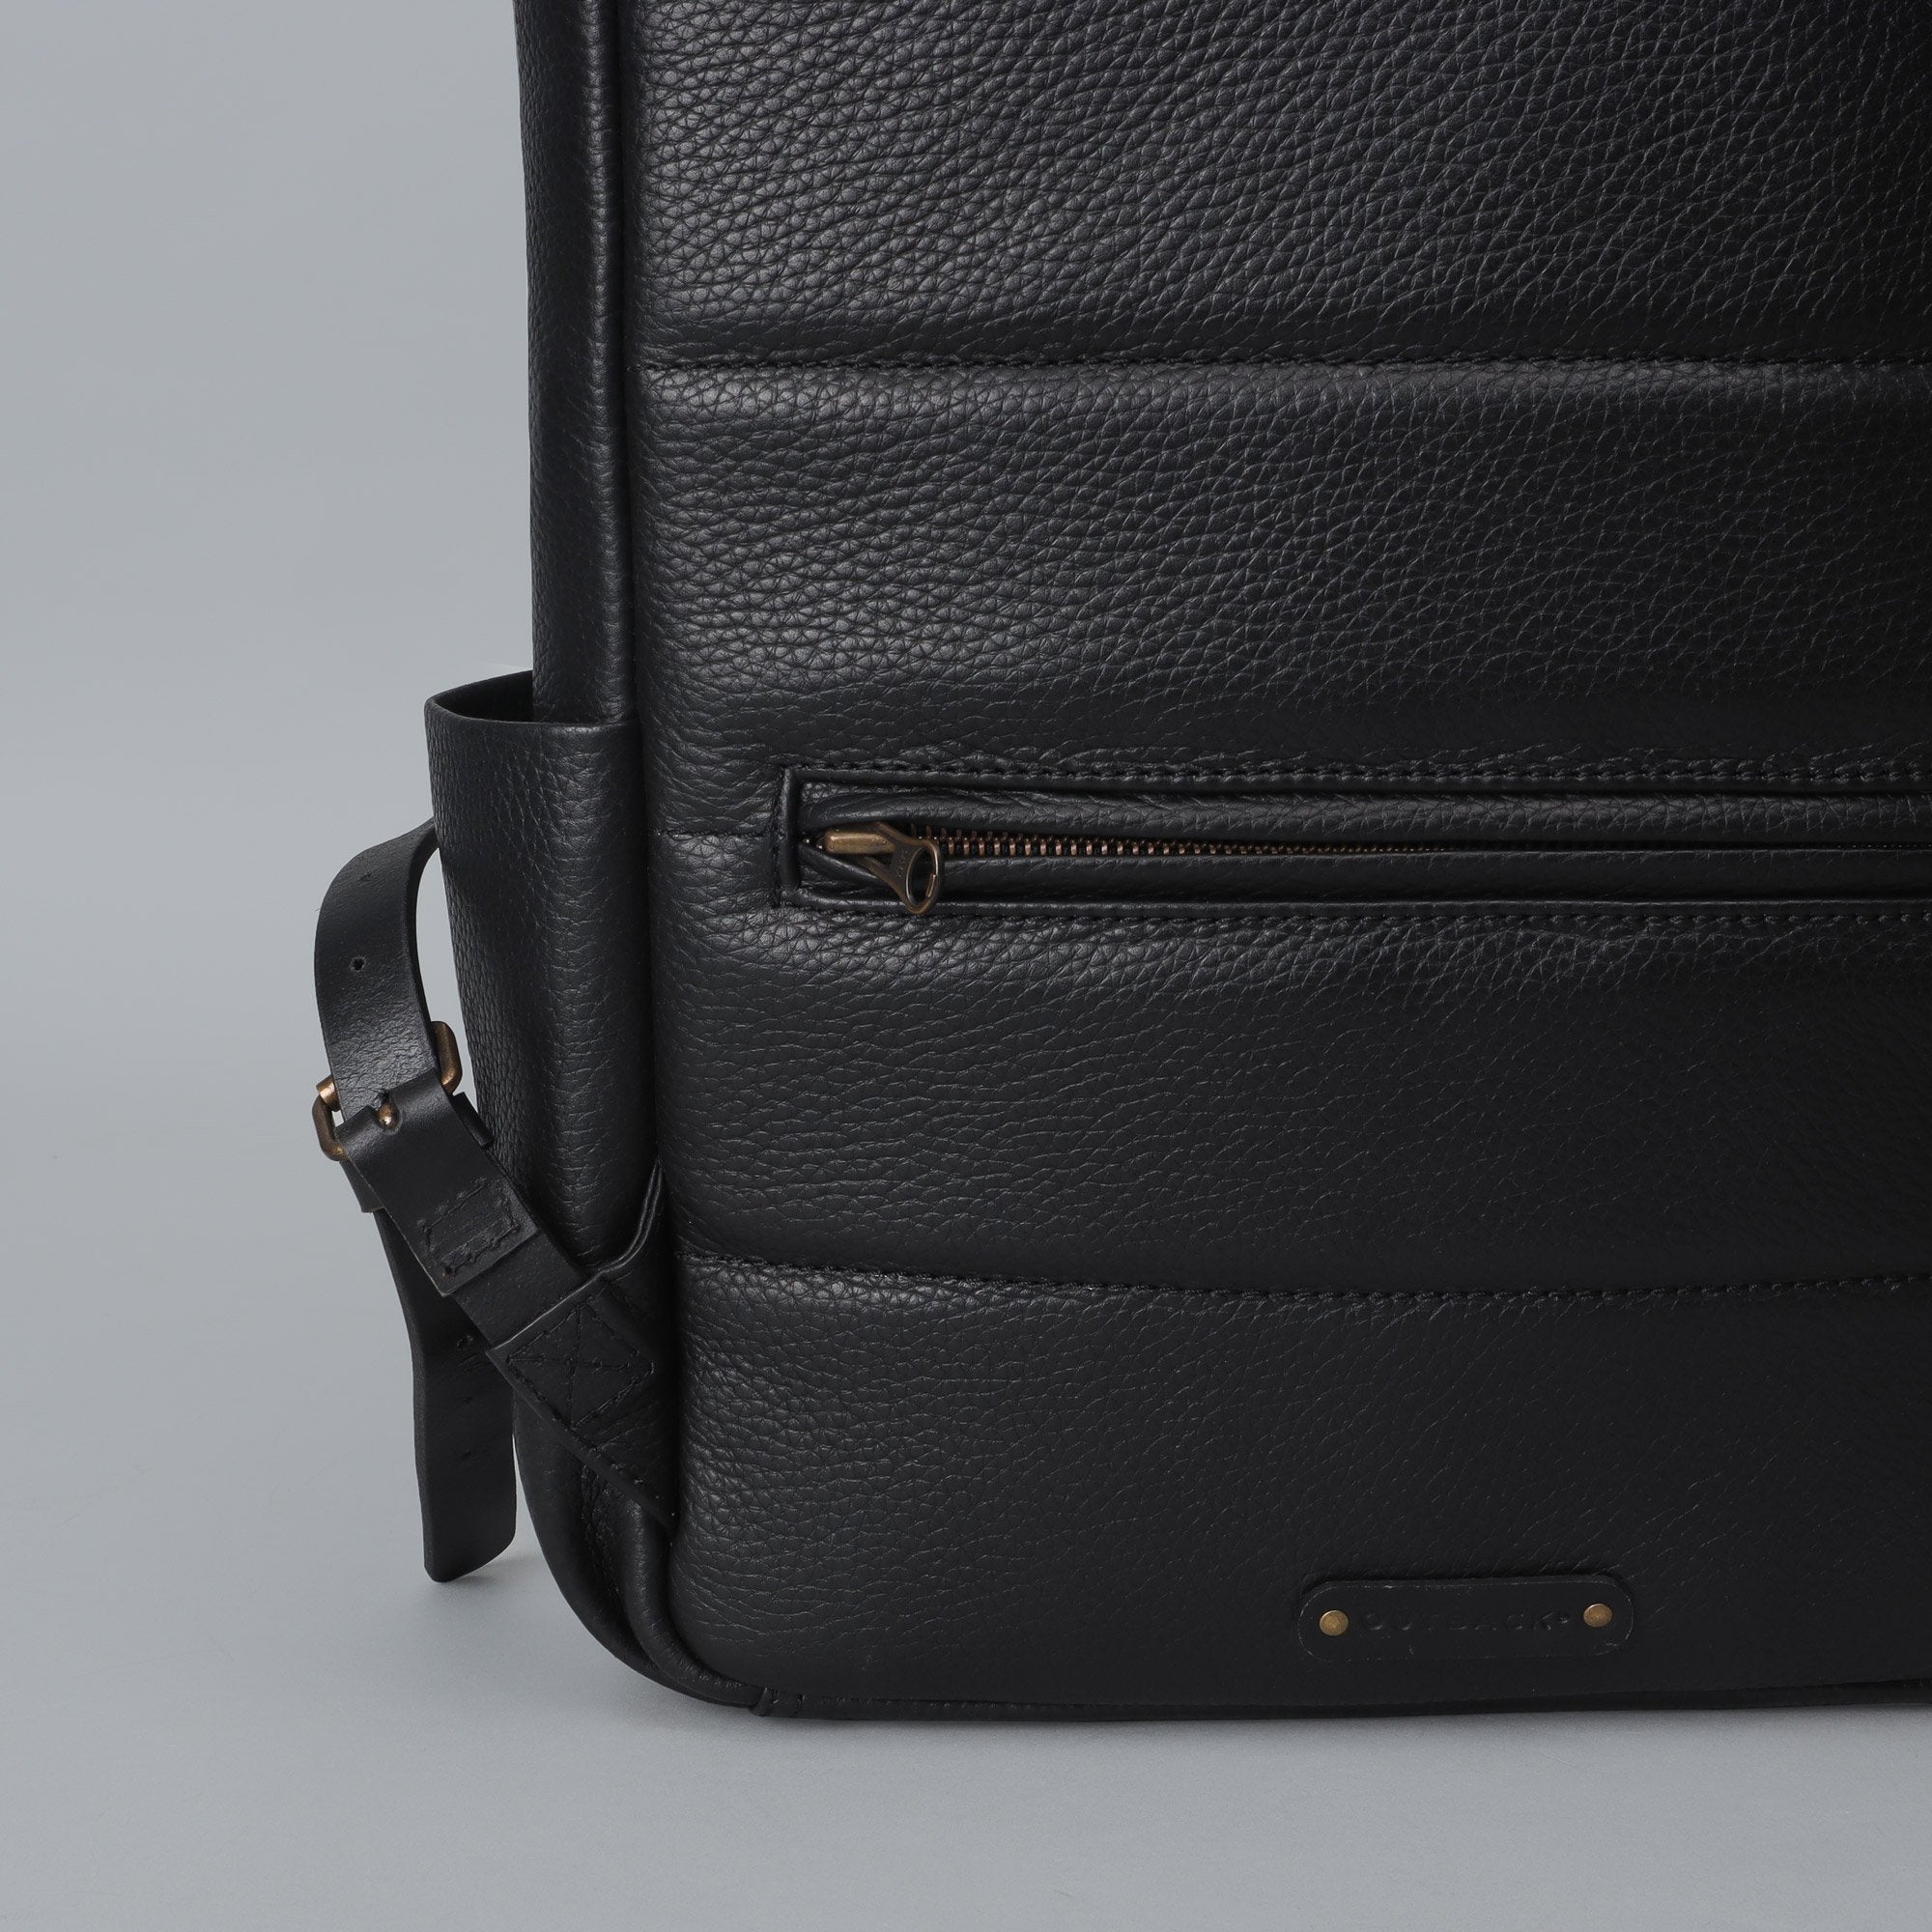 Black Leather laptop backpack for men